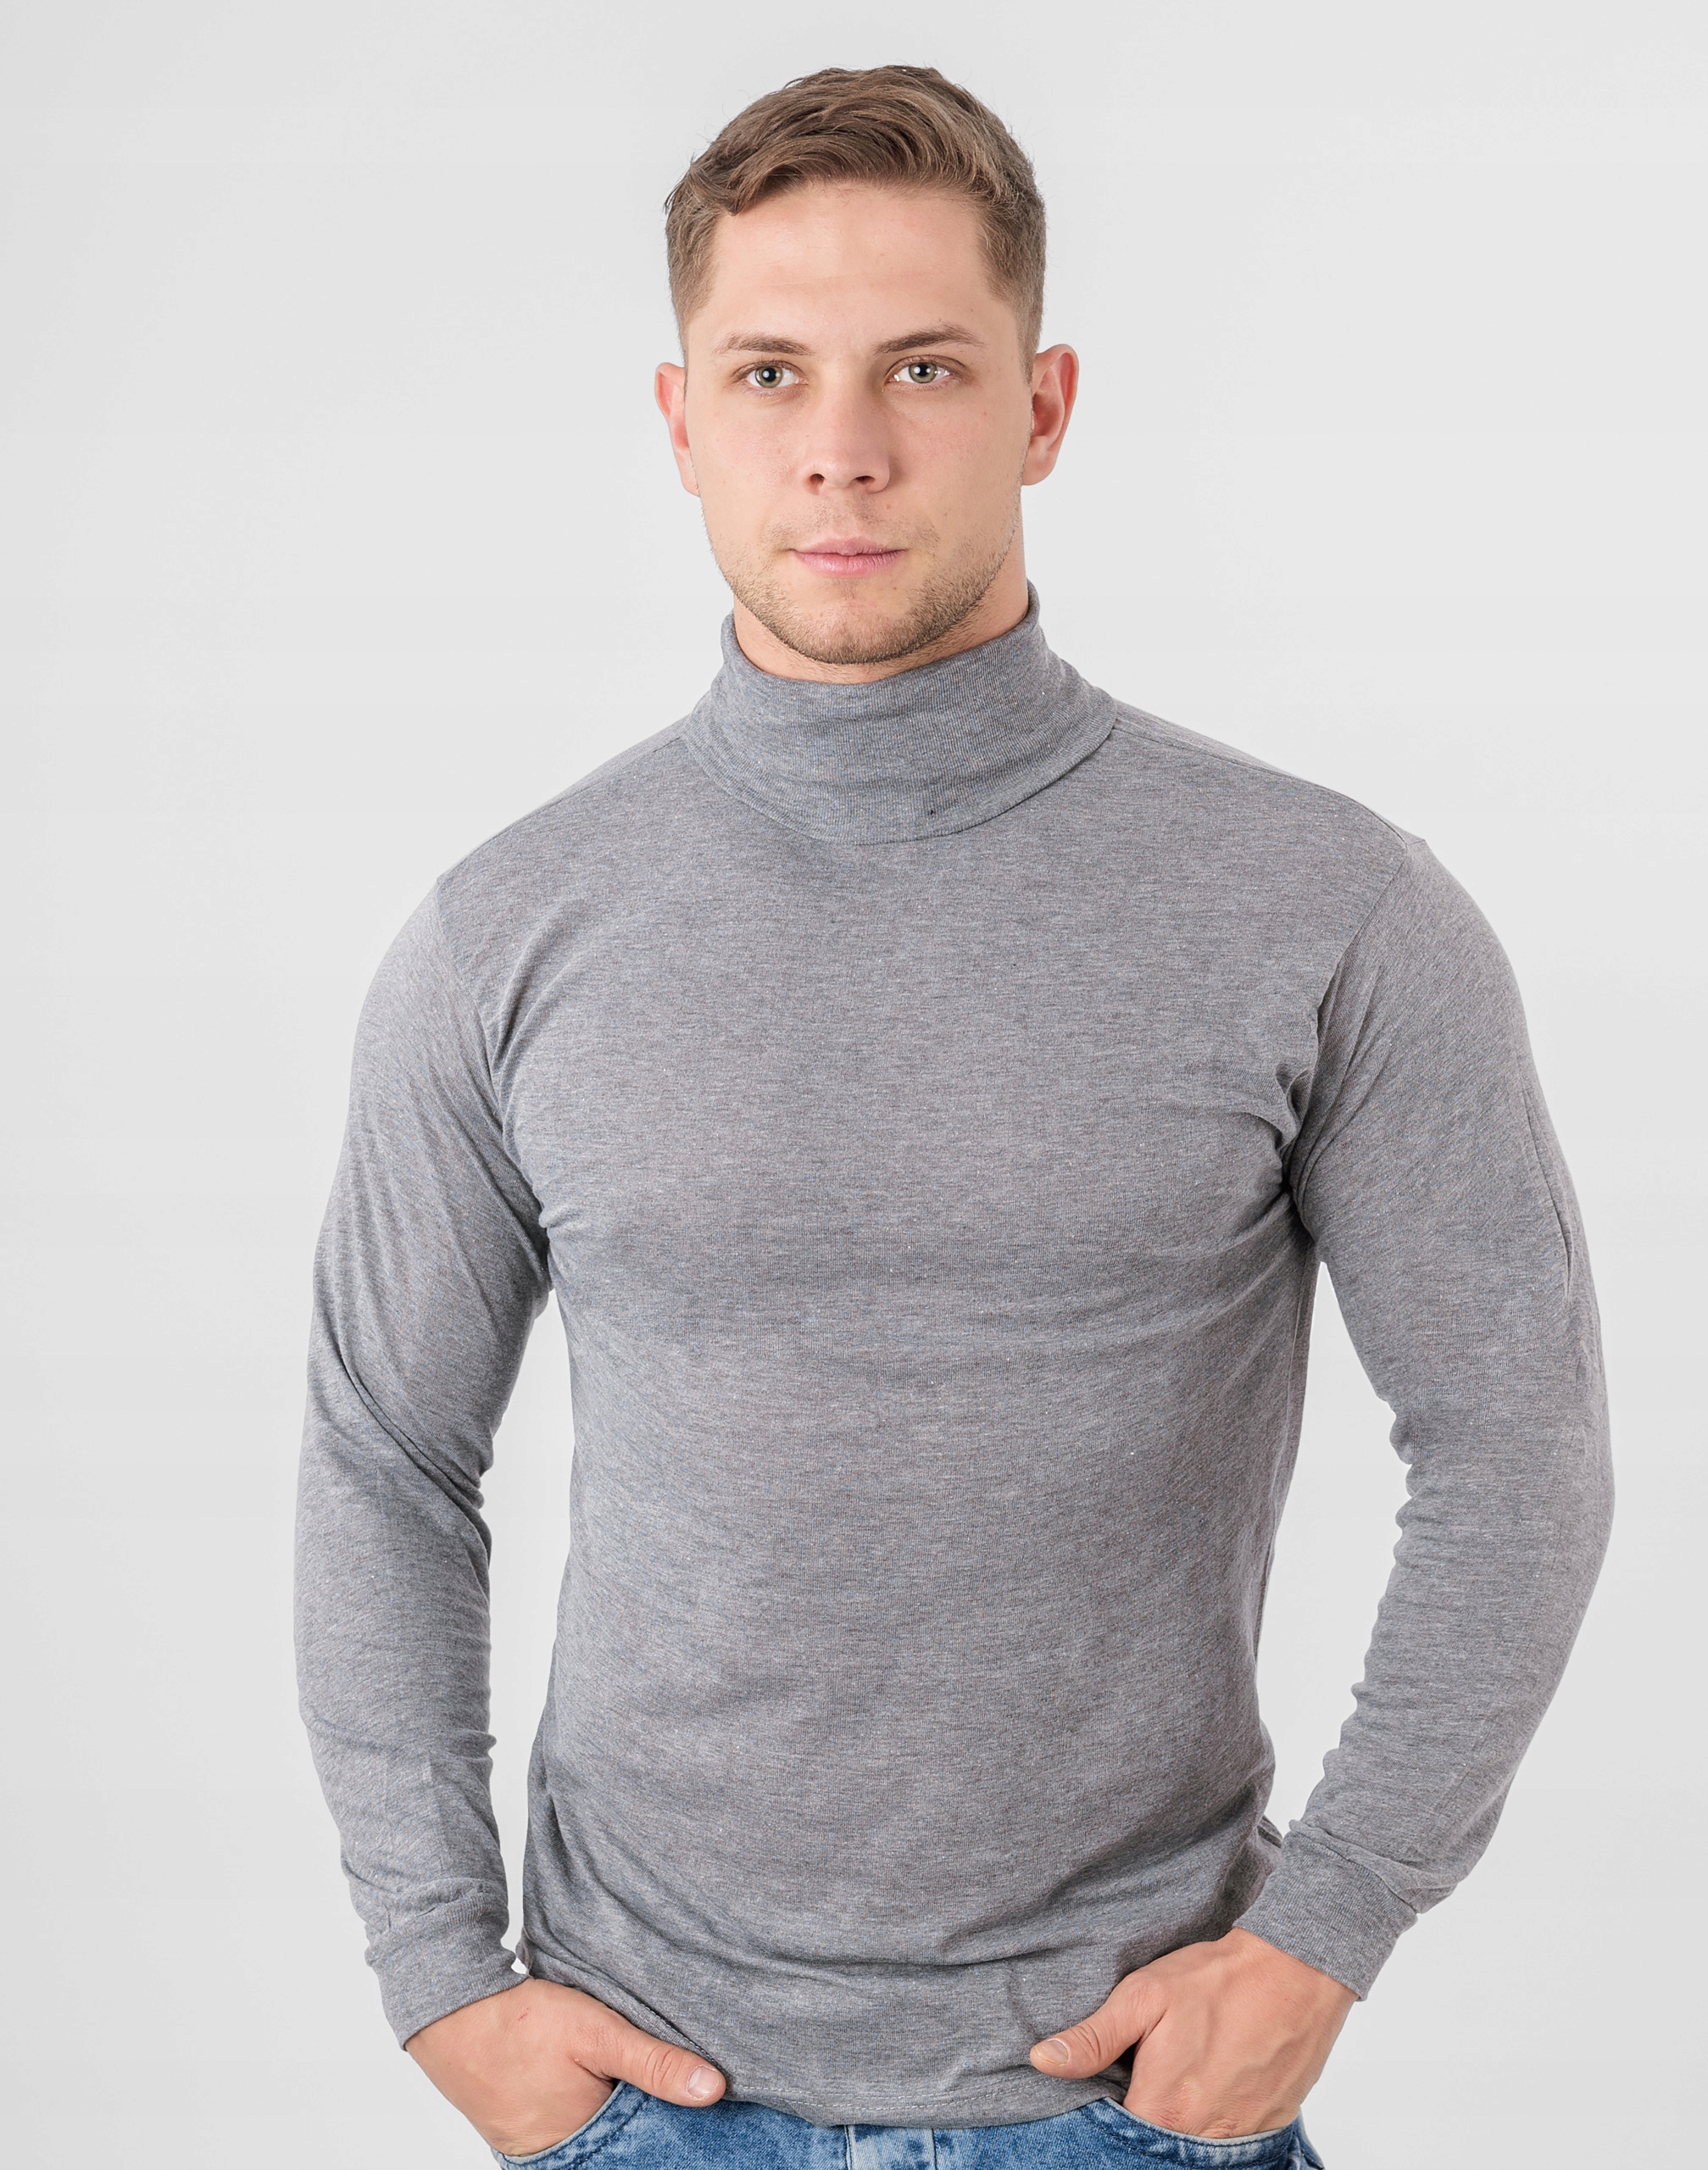 Элегантный тонкий водолазка мужской свитер GM01 XXL серый Gender мужчины